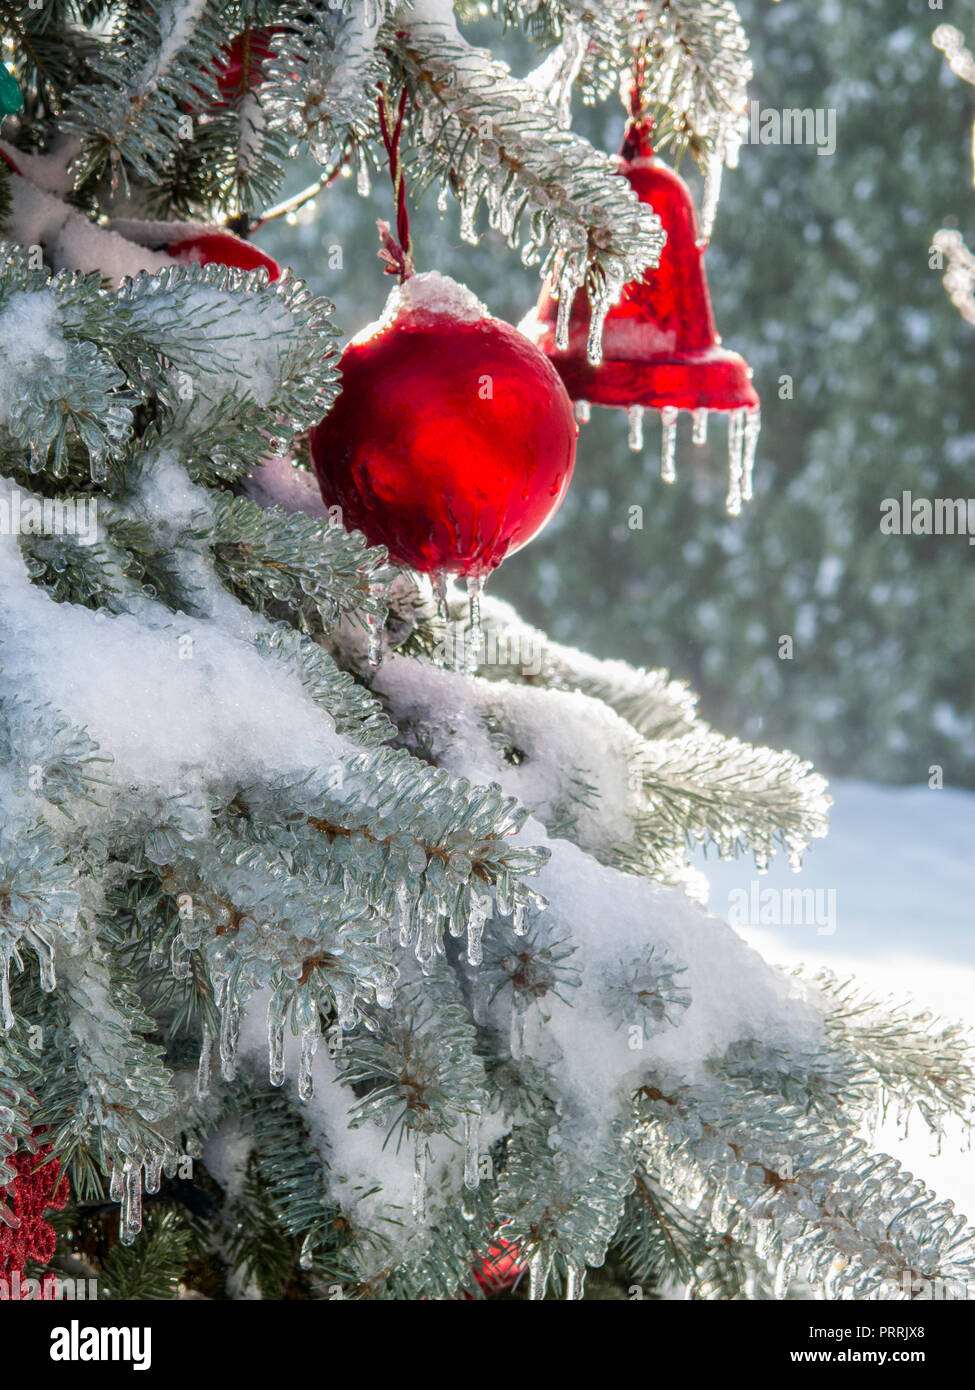 Red outdoor Weihnachten Kugeln zeichnen sich auf einer schnee- und  eisbedeckten immergrüner Baum Stockfotografie - Alamy